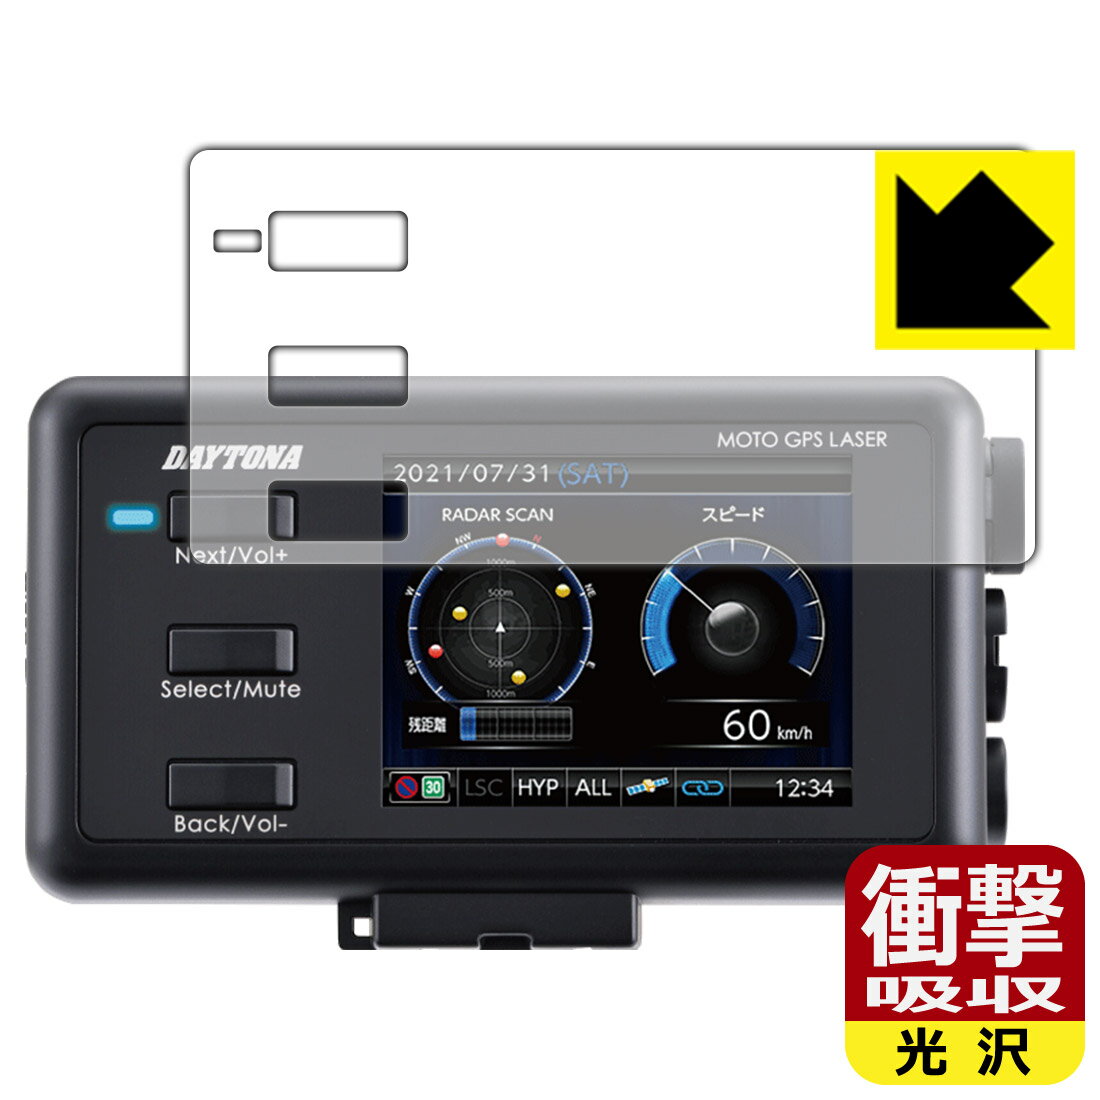 衝撃吸収【光沢】保護フィルム MOTO GPS LASER (25674) 日本製 自社製造直販